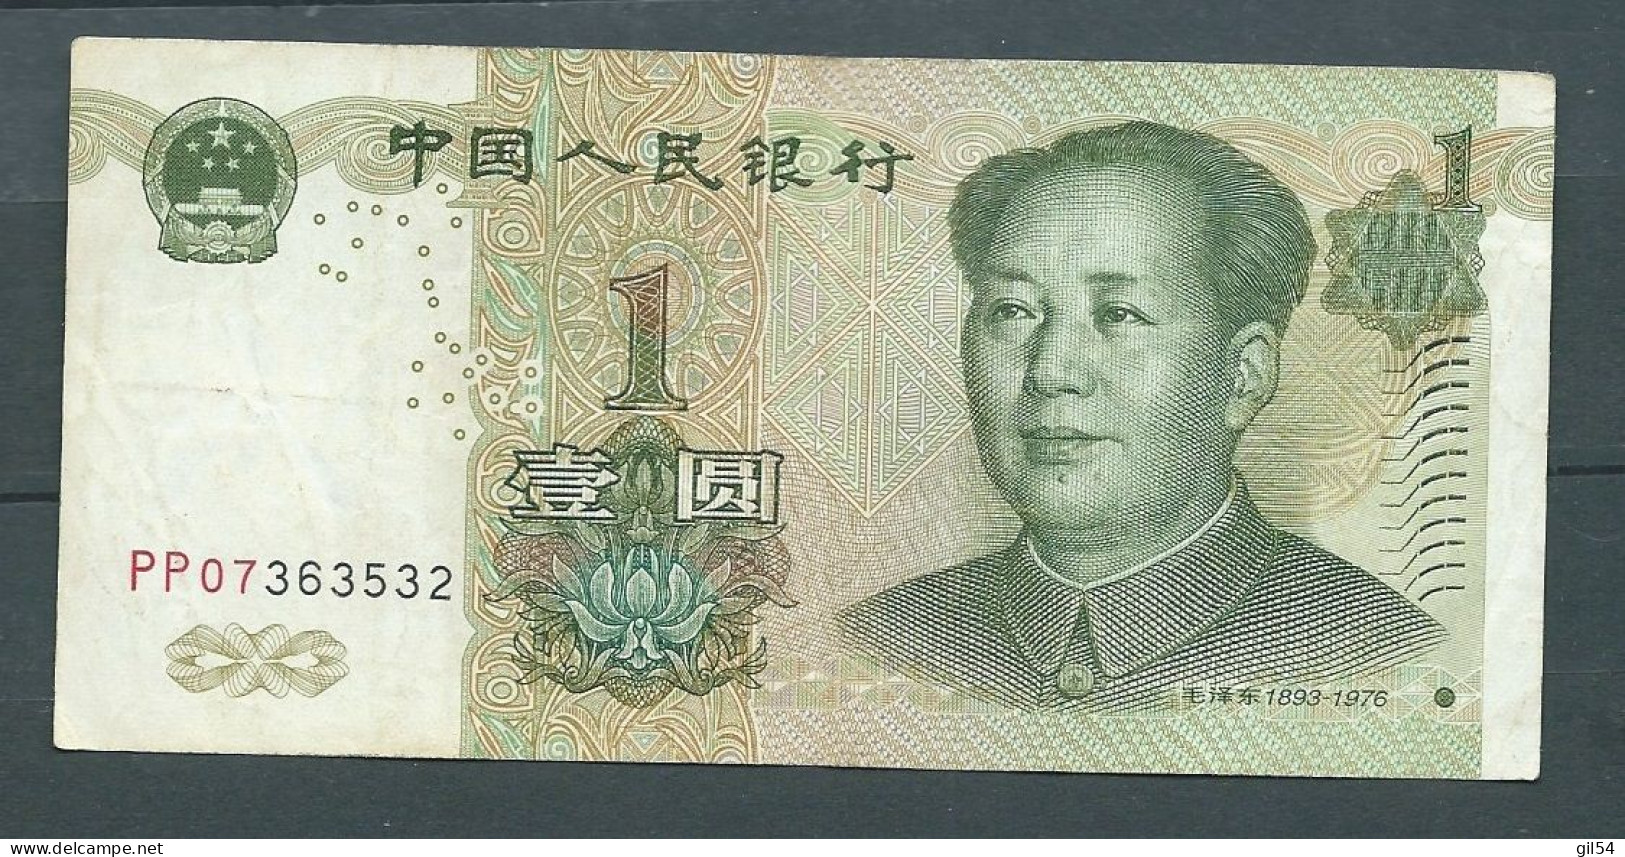 CHINE 1 YUAN 1999 -  PP07363532 - Laura 9329 - China